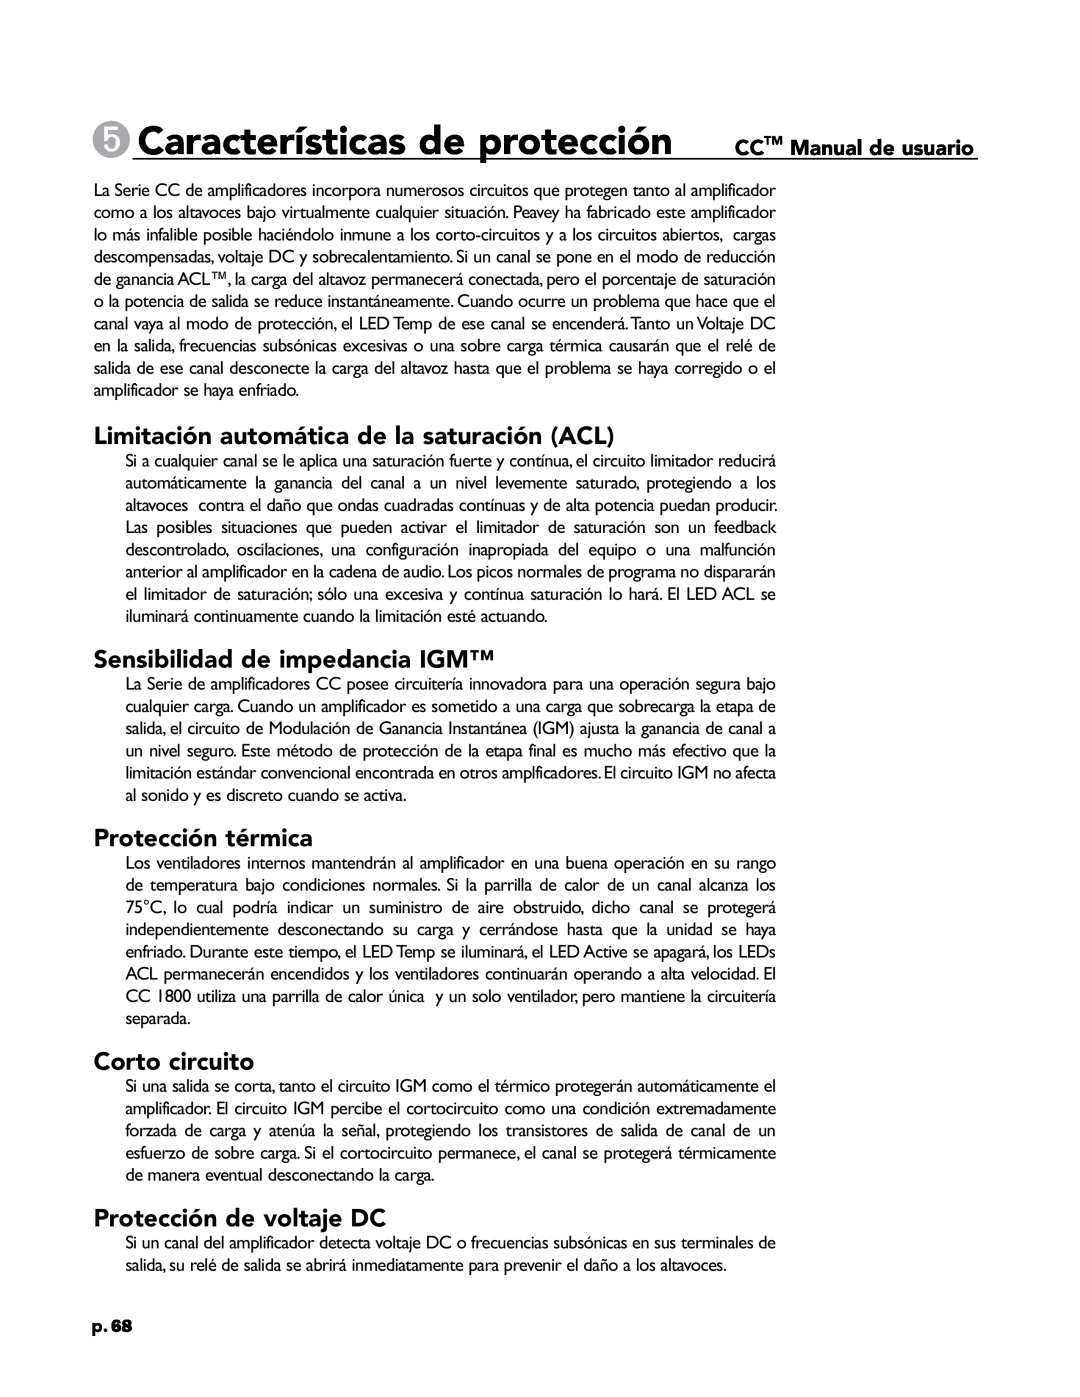 Crest Audio CC 5500 5Características de protección, Limitación automática de la saturación ACL, Protección térmica, p.68 